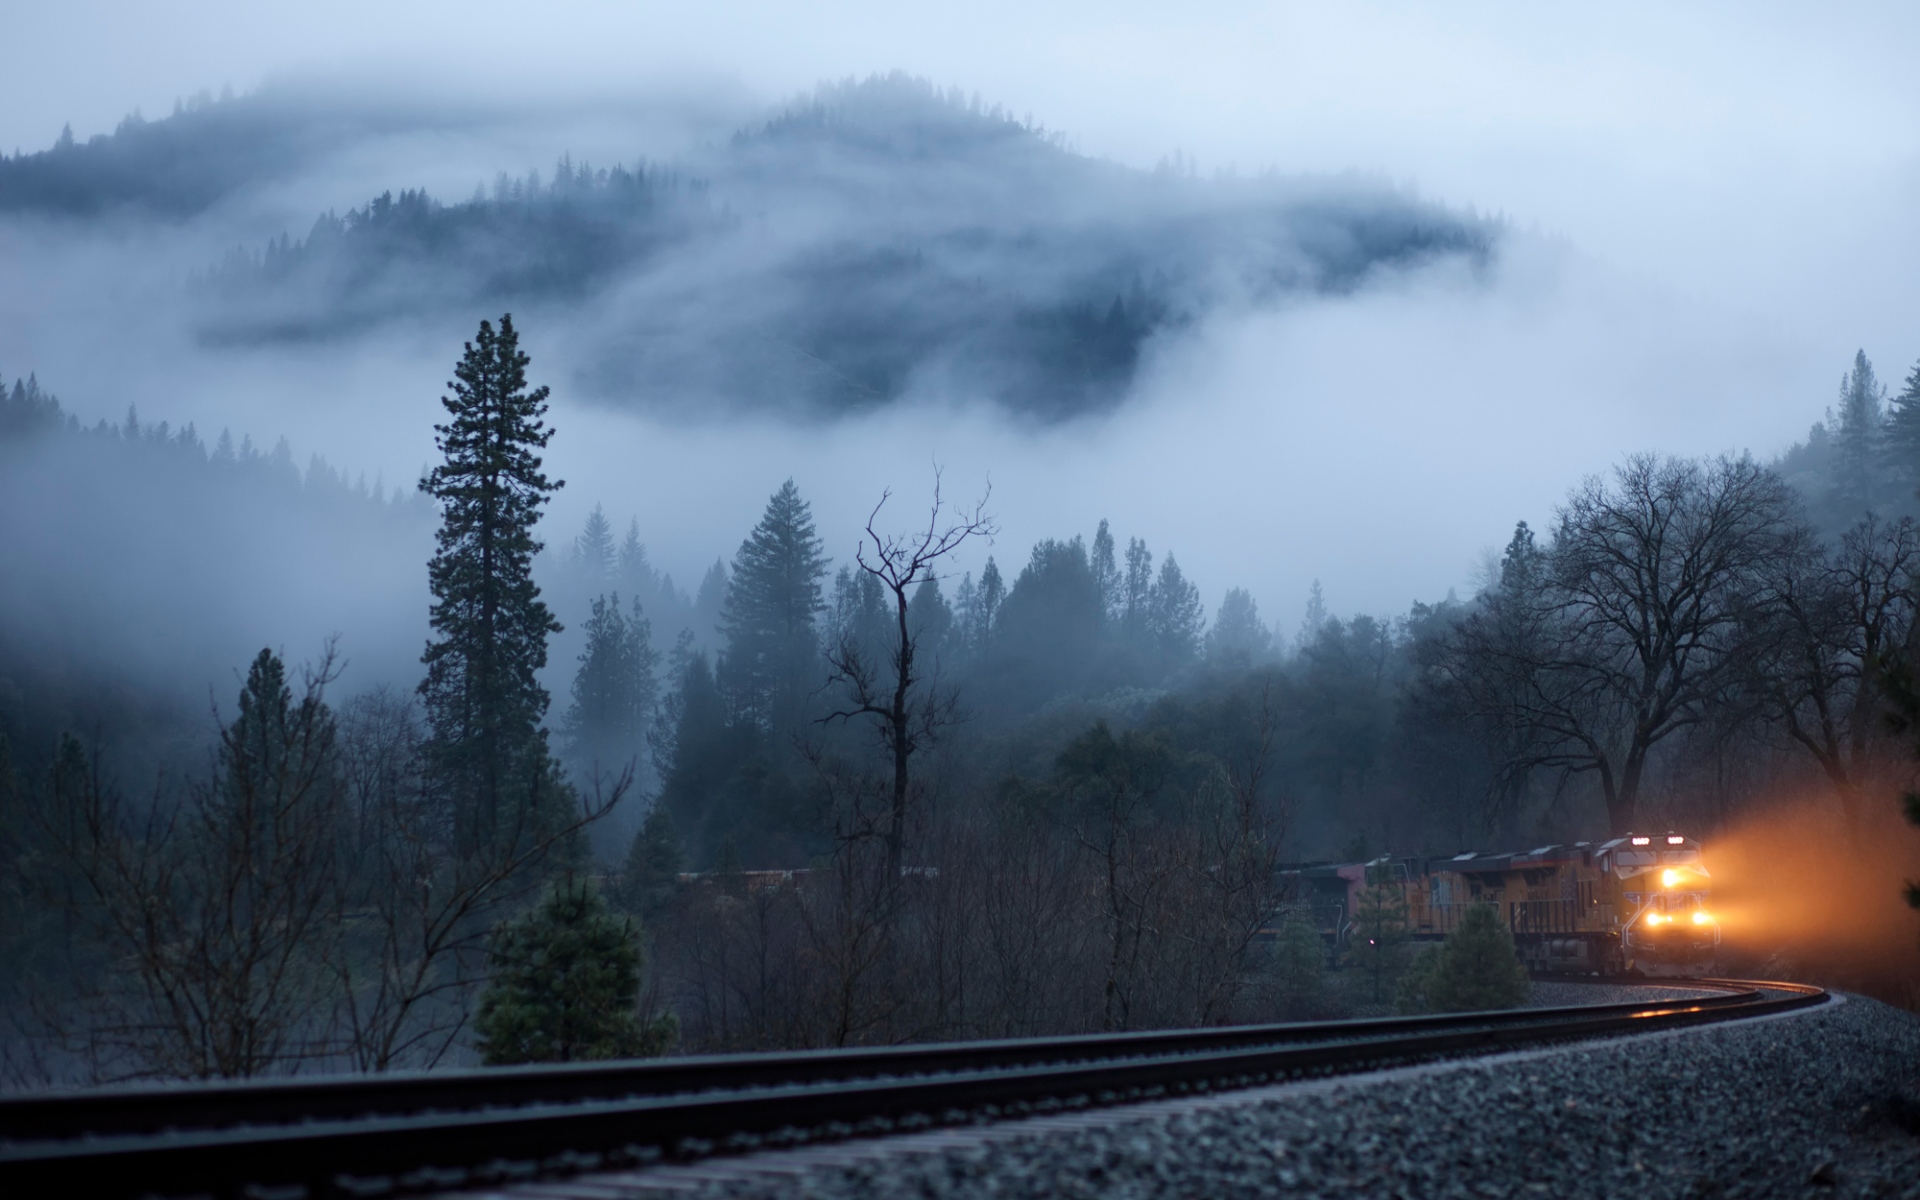 Картинки Поезд, туман, железная дорога, свет, деревья фото и обои на рабочий стол